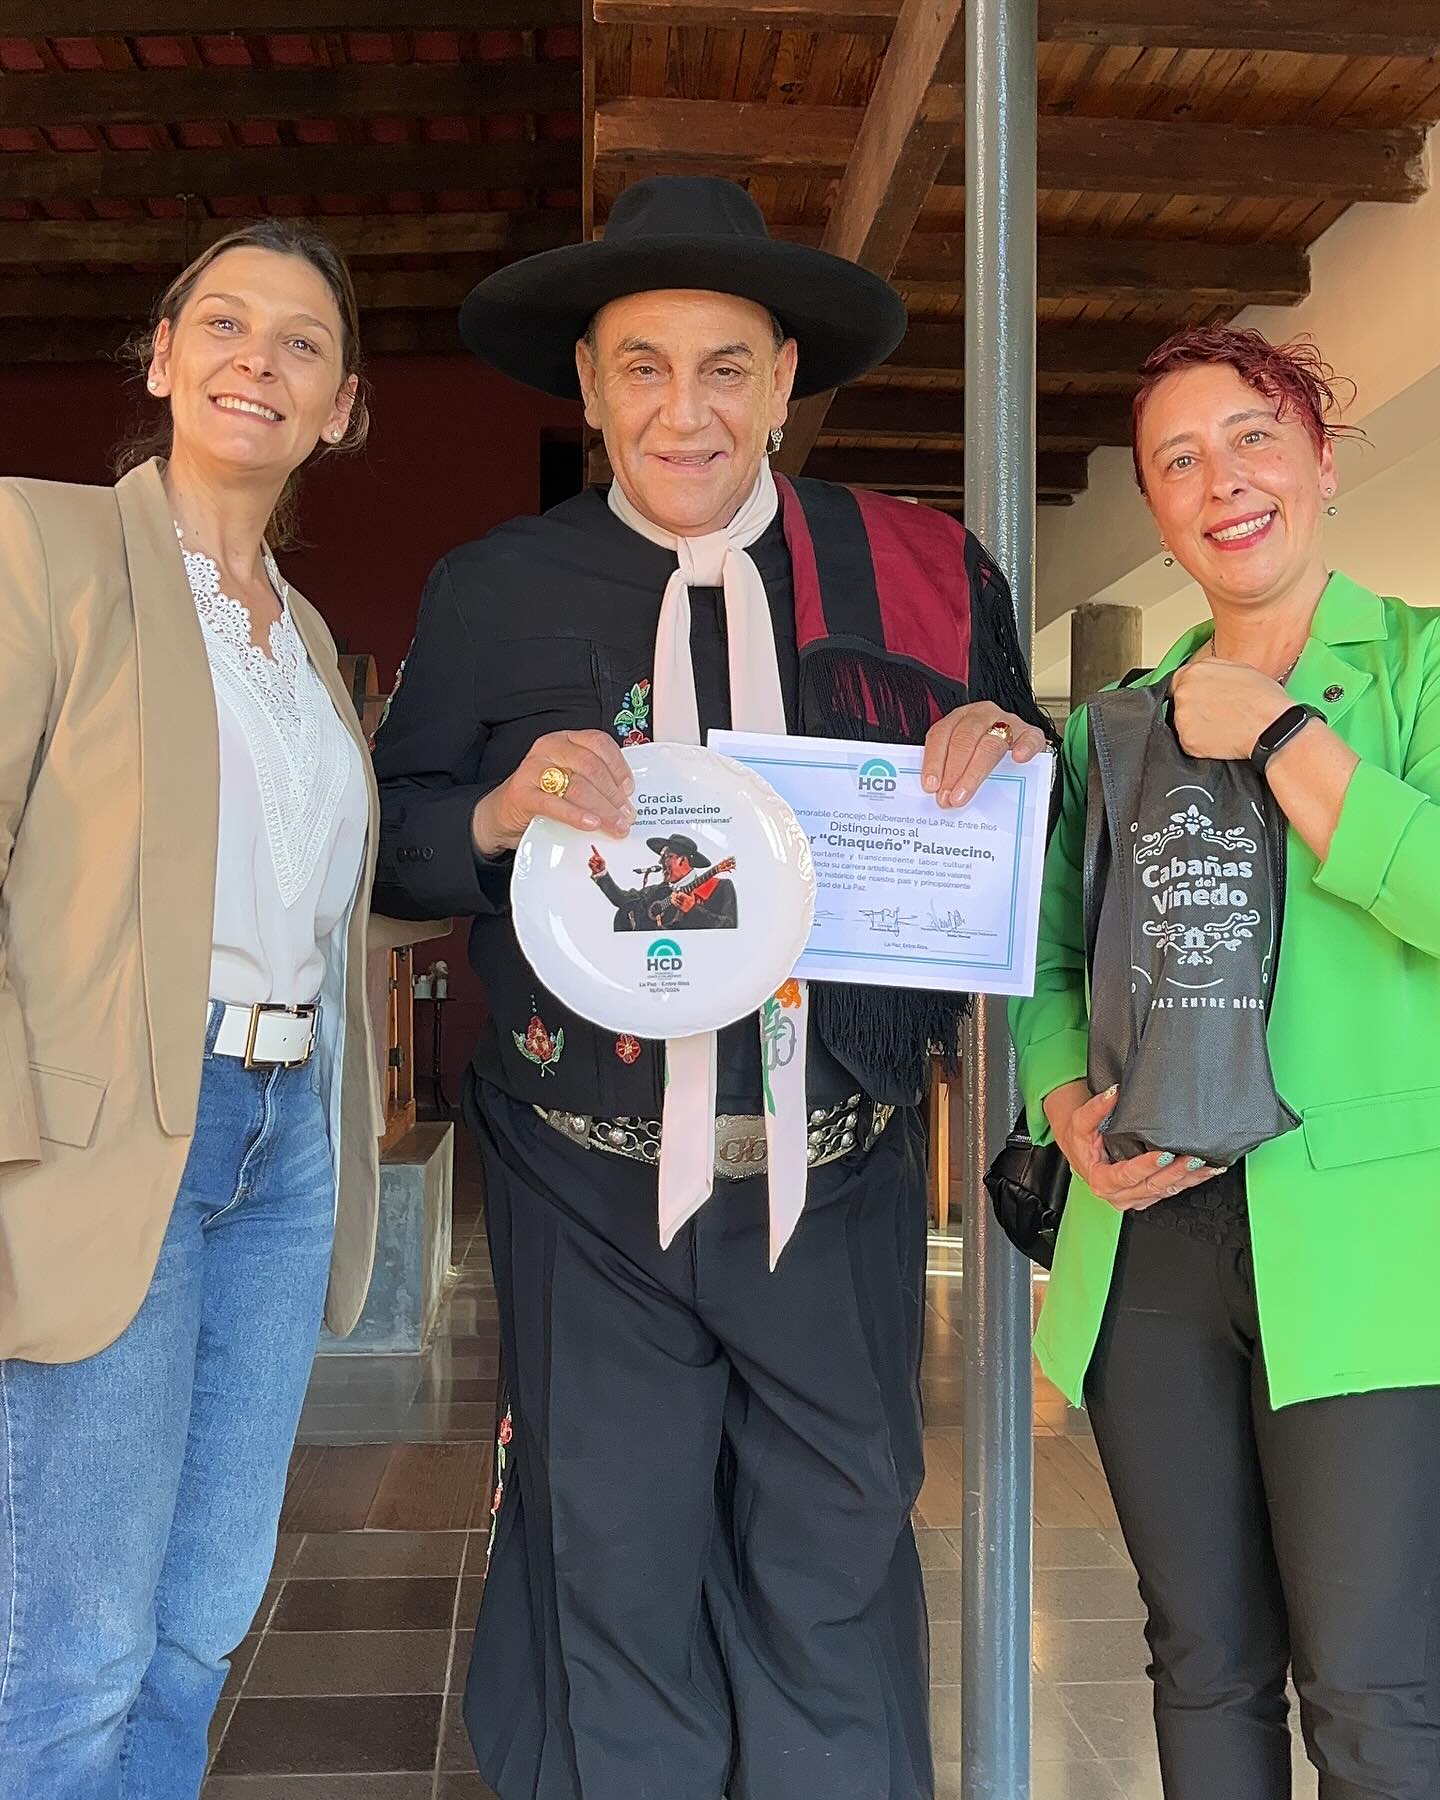 La Paz: Oscar “el Chaqueño” Palavecino recibió una distinción y agradecimiento por parte del Concejo Deliberante.